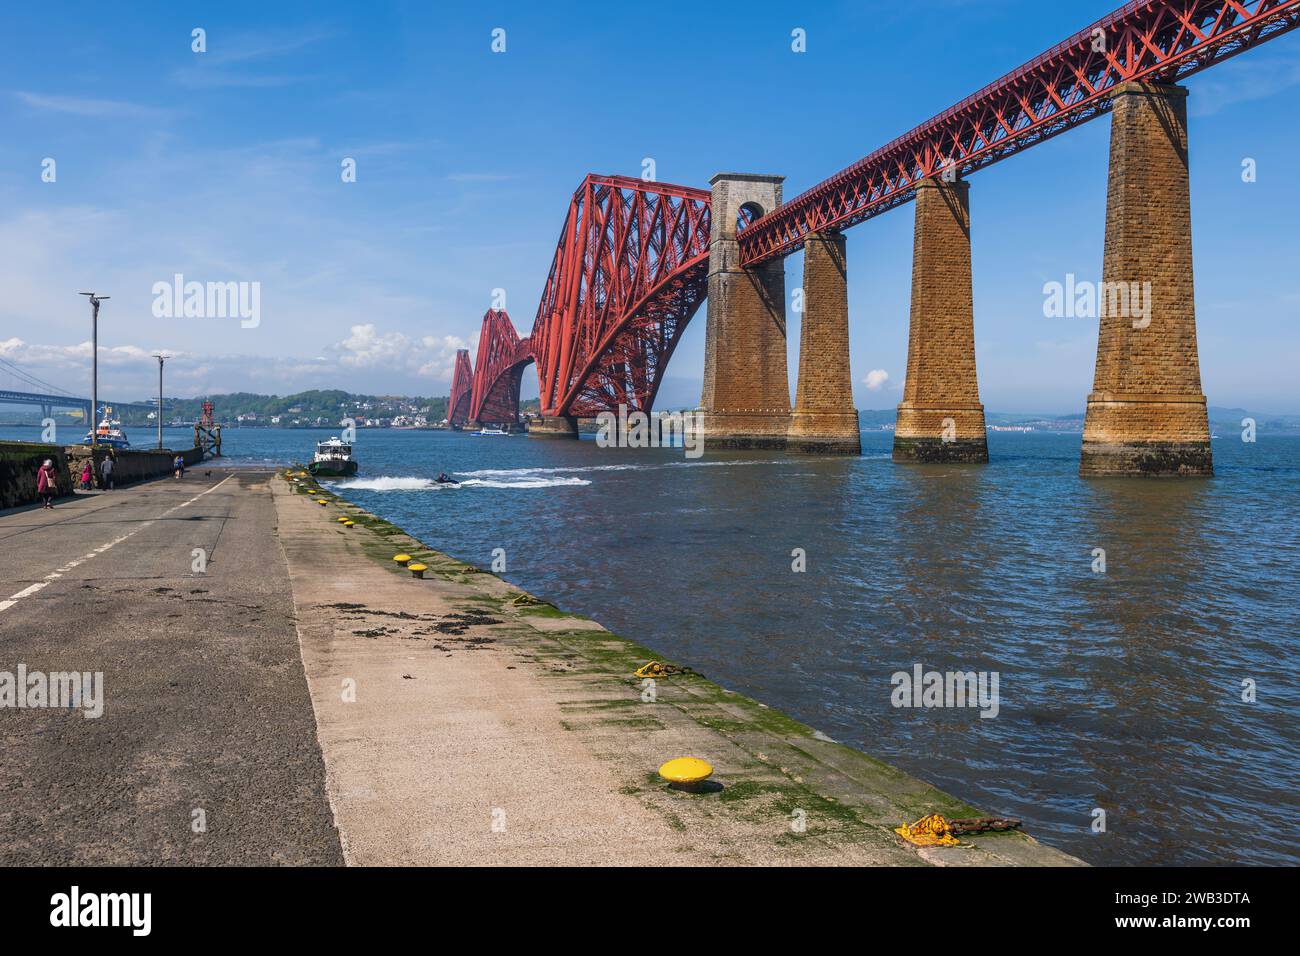 Die Forth Bridge am Firth of Forth Mündung von South Queensferry Bootsanlegestelle in Schottland, Großbritannien. Stockfoto